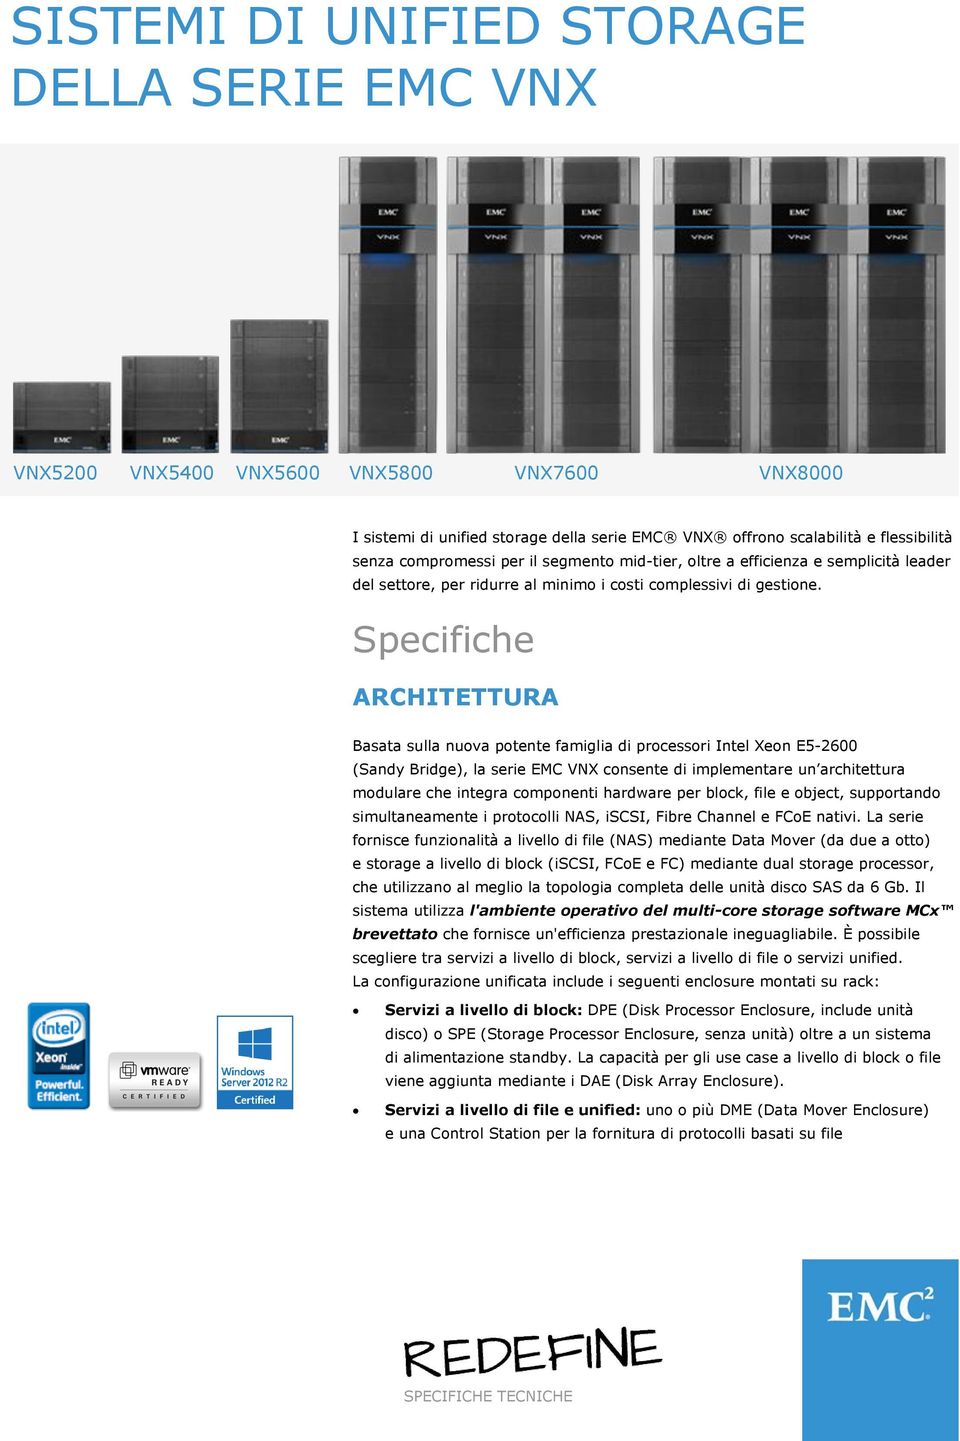 Specifiche ARCHITETTURA Basata sulla nuova potente famiglia di processori Intel Xeon E5-2600 (Sandy Bridge), la serie EMC VNX consente di implementare un architettura modulare che integra componenti